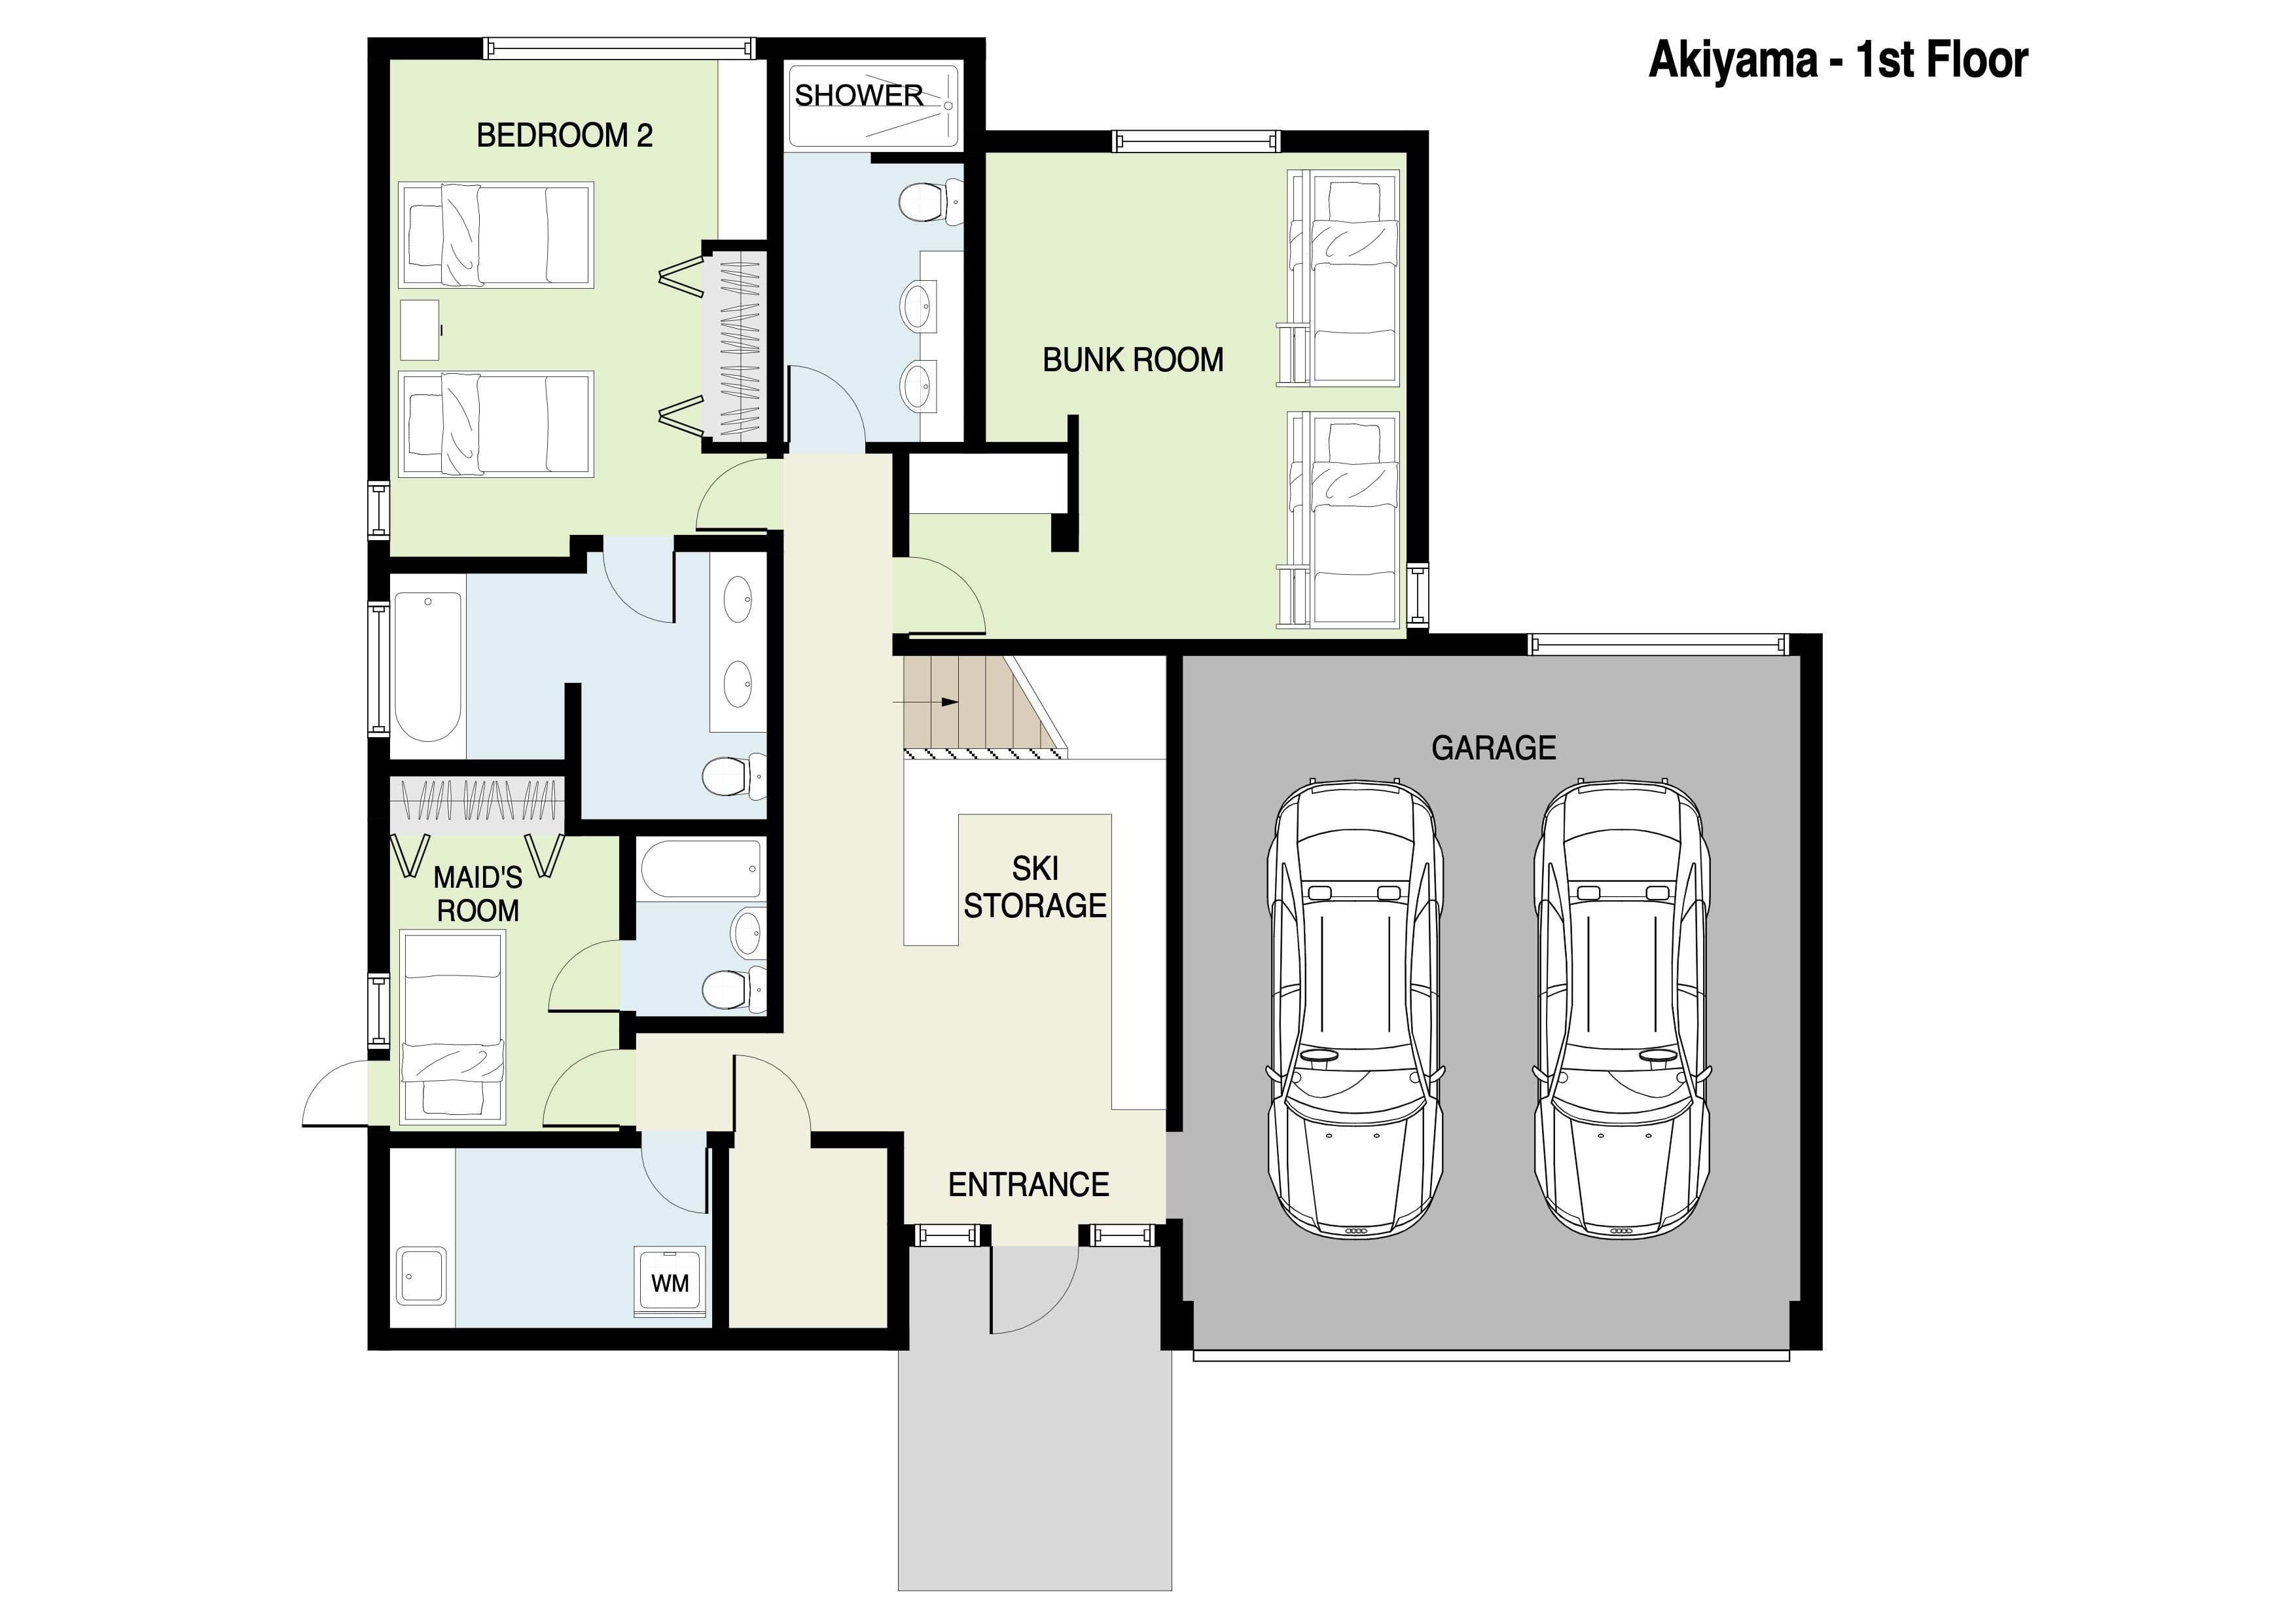 Akiyama First Floor Plans